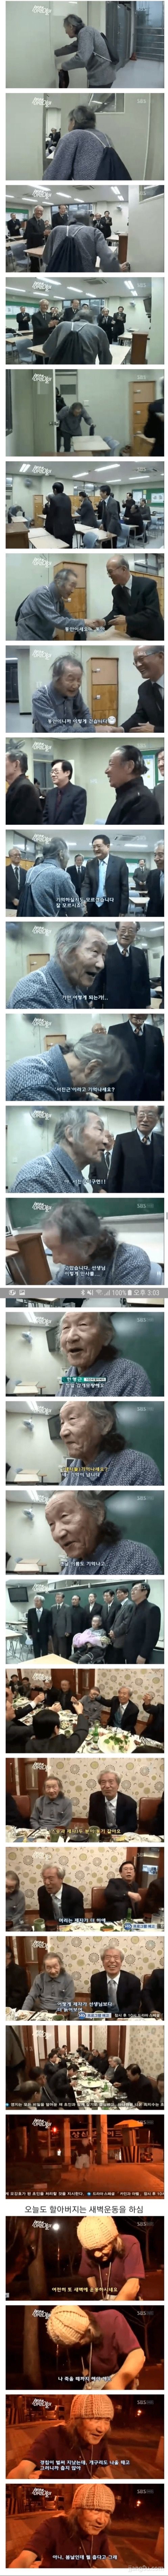 102세 수학선생님